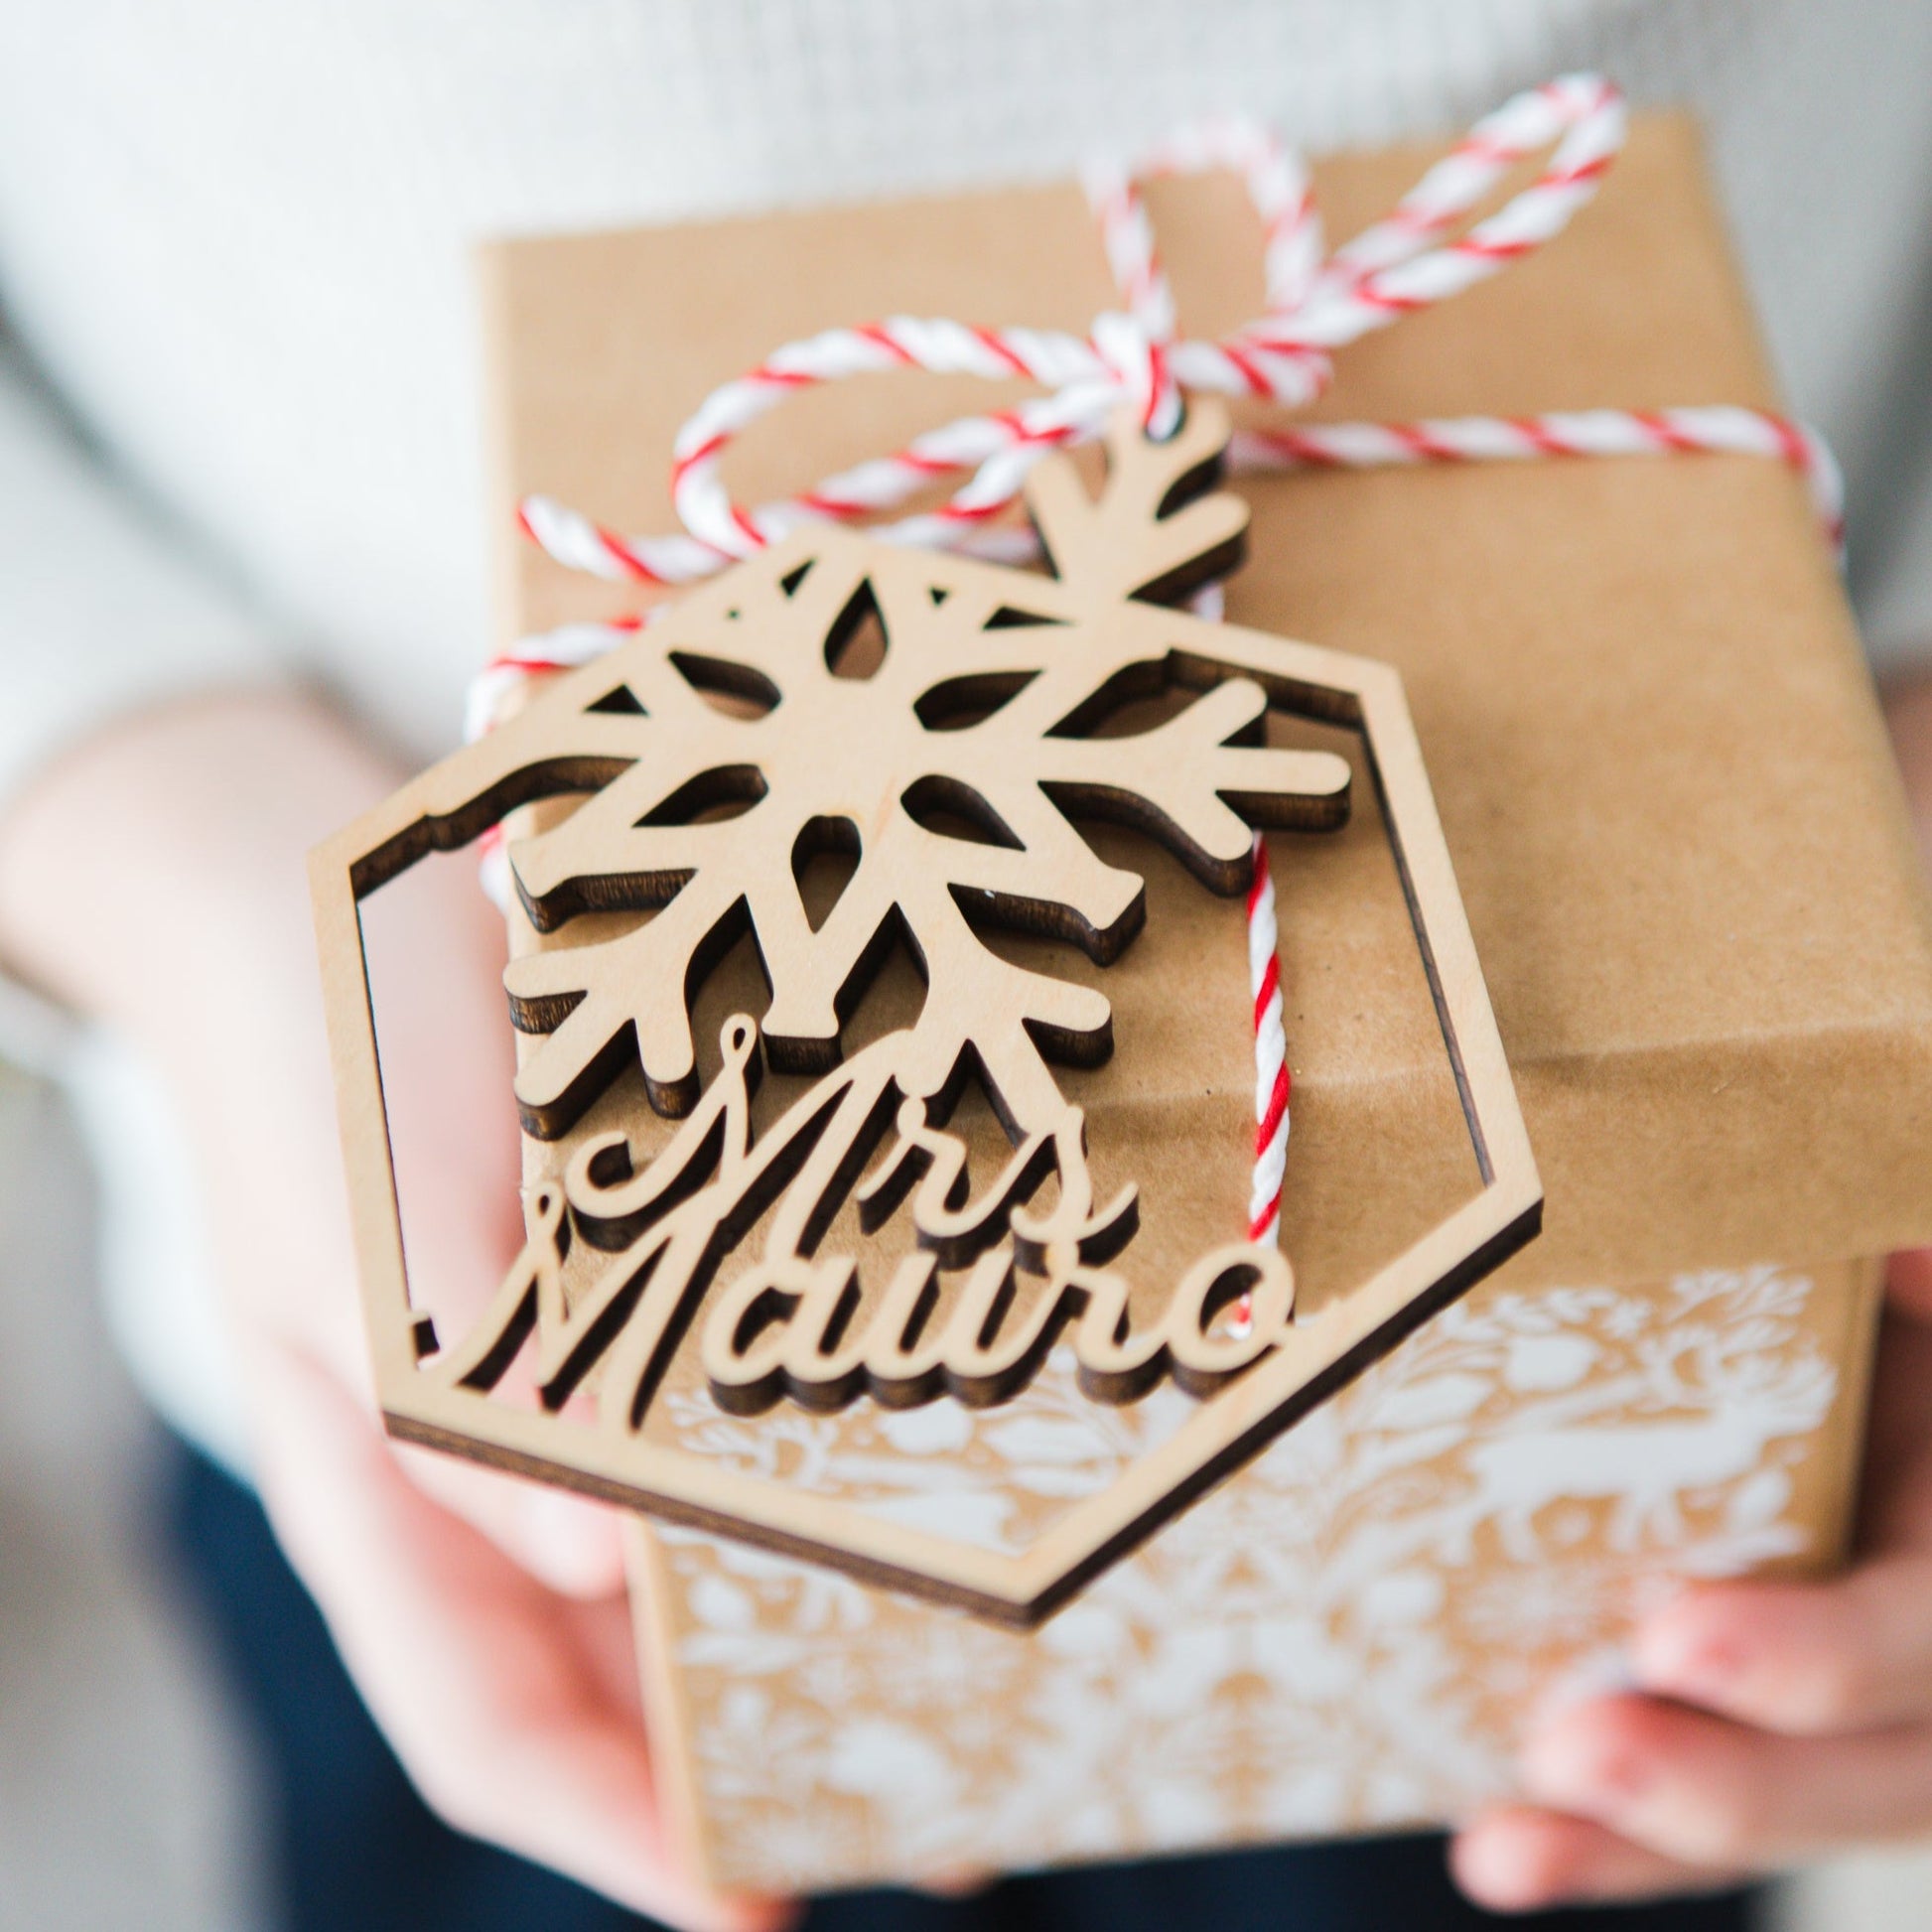 snowflake design christmas ornament gift tag